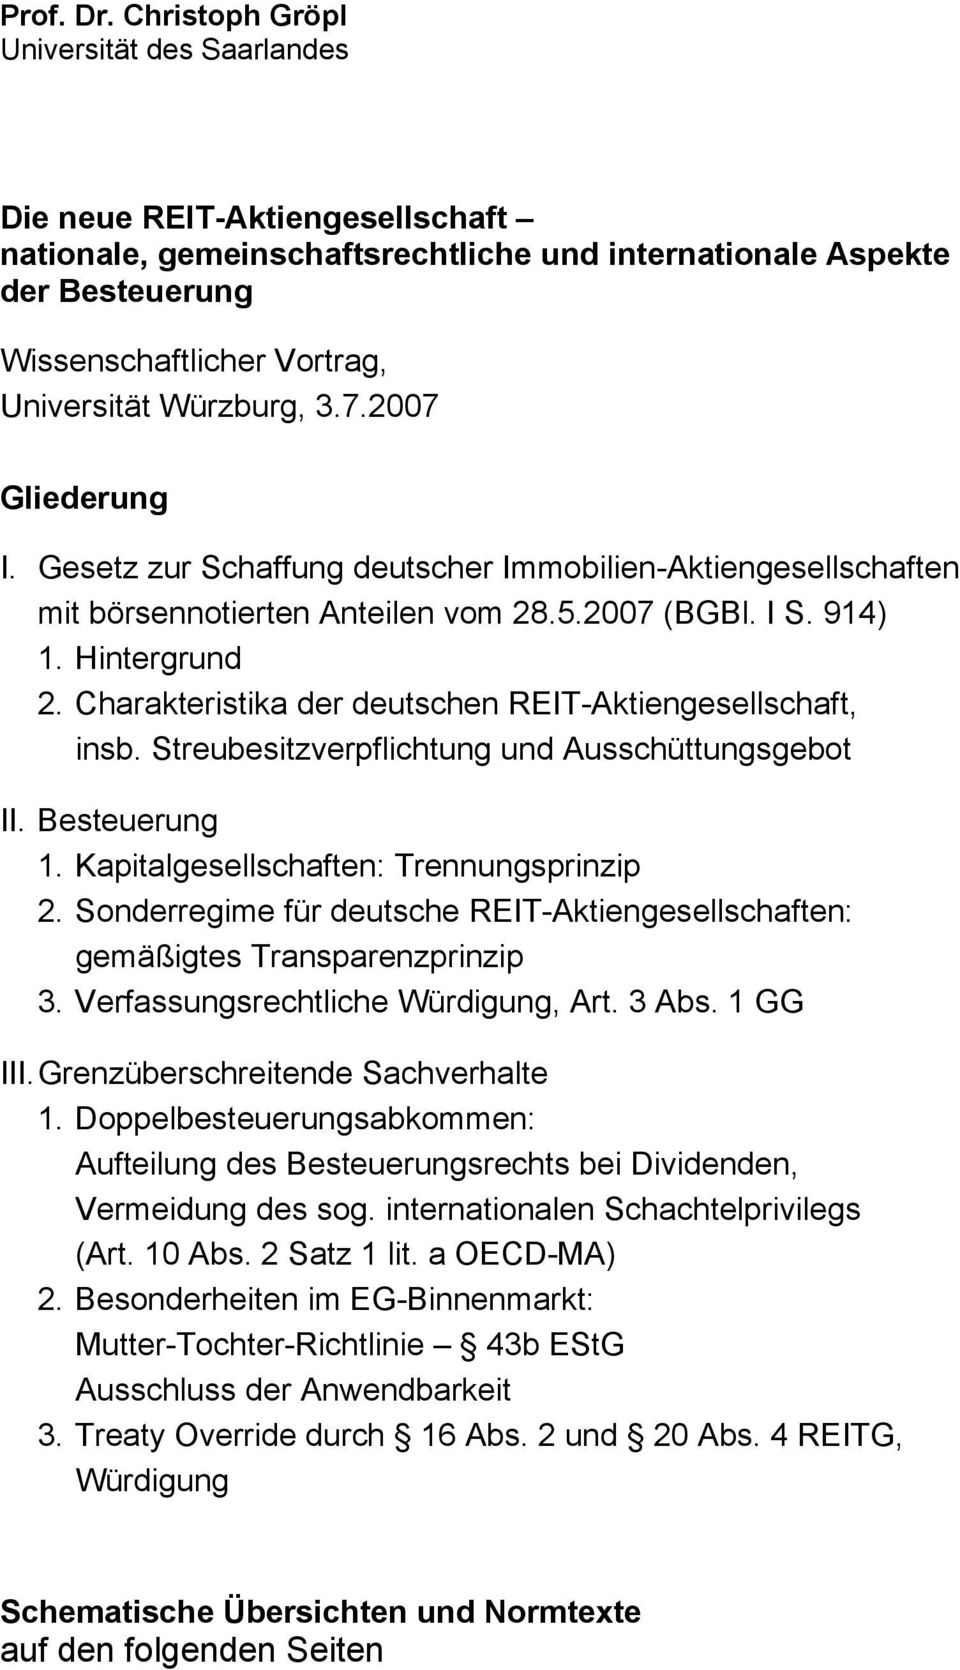 Würzburg, 3.7.2007 Gliederung I. Gesetz zur Schaffung deutscher Immobilien-Aktiengesellschaften mit börsennotierten Anteilen vom 28.5.2007 (BGBl. I S. 914) 1. Hintergrund 2.